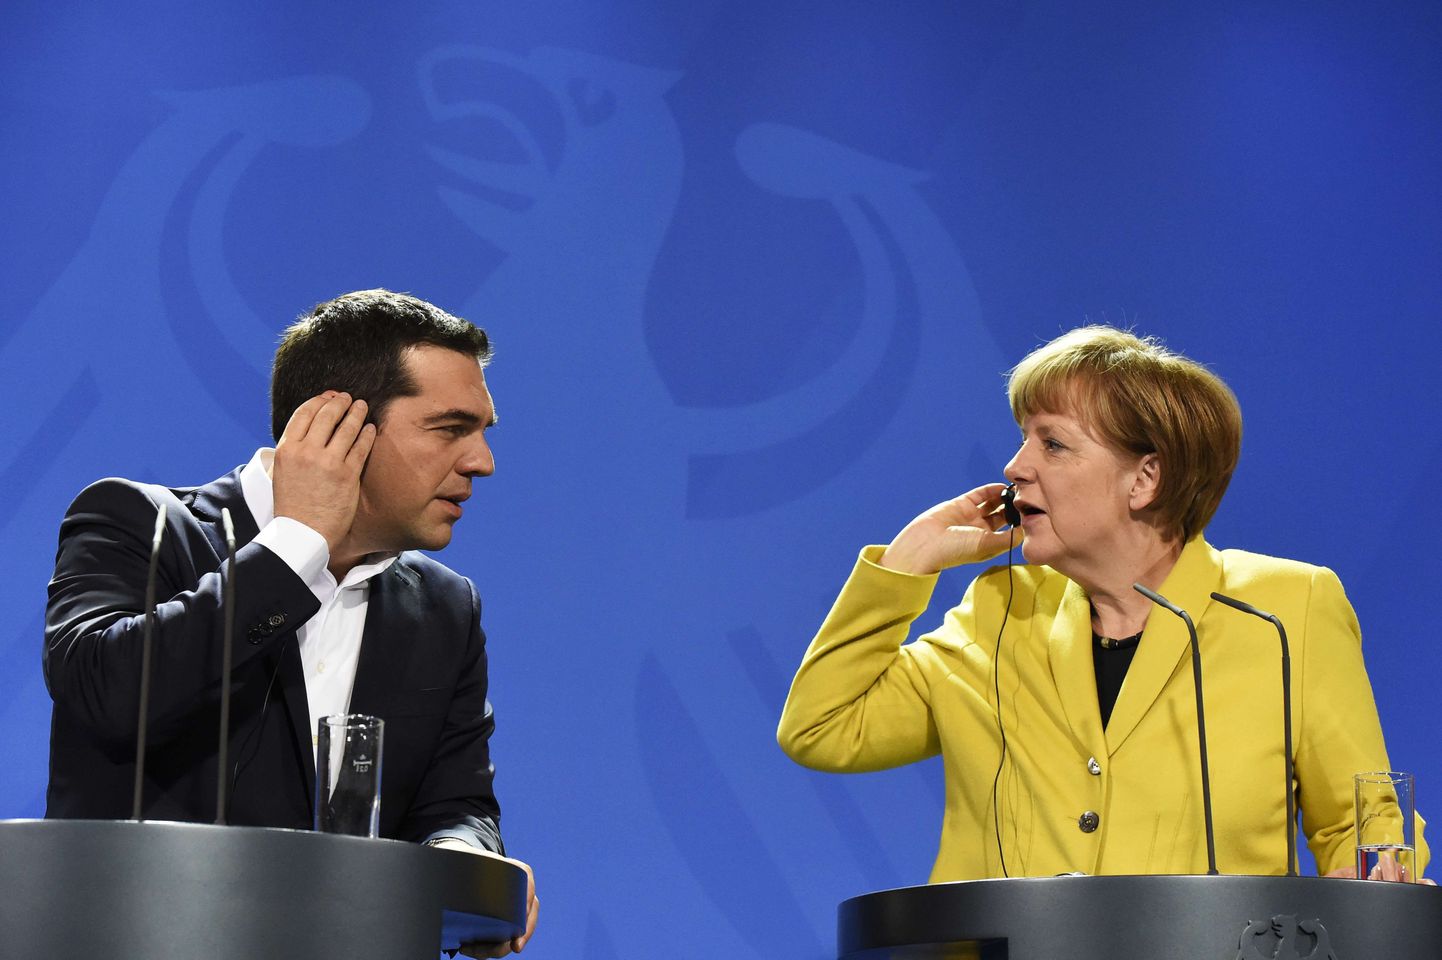 Kreeka valitsus eesotsas Alexis Tsiprasega on lõpuks otsustanud ära Angela Merkelile esitatava reparatsiooninõude suuruse.